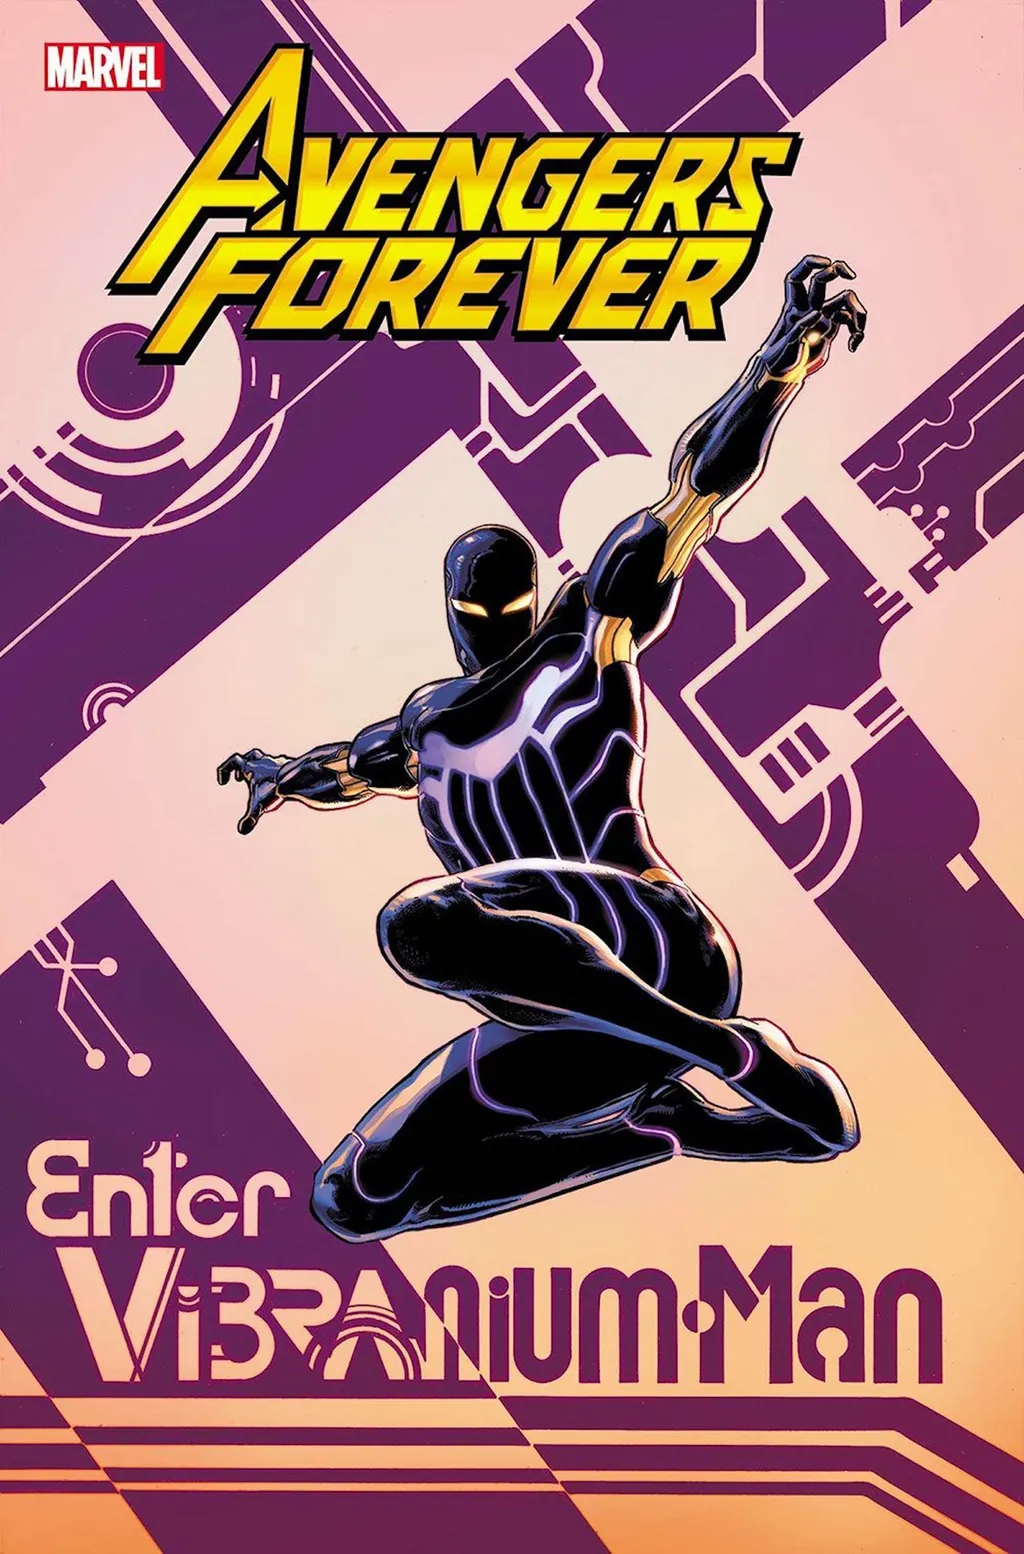 Homem de Vibranium está na capa de Avengers Forever #6 (Imagem: Reprodução/Marvel Comics)